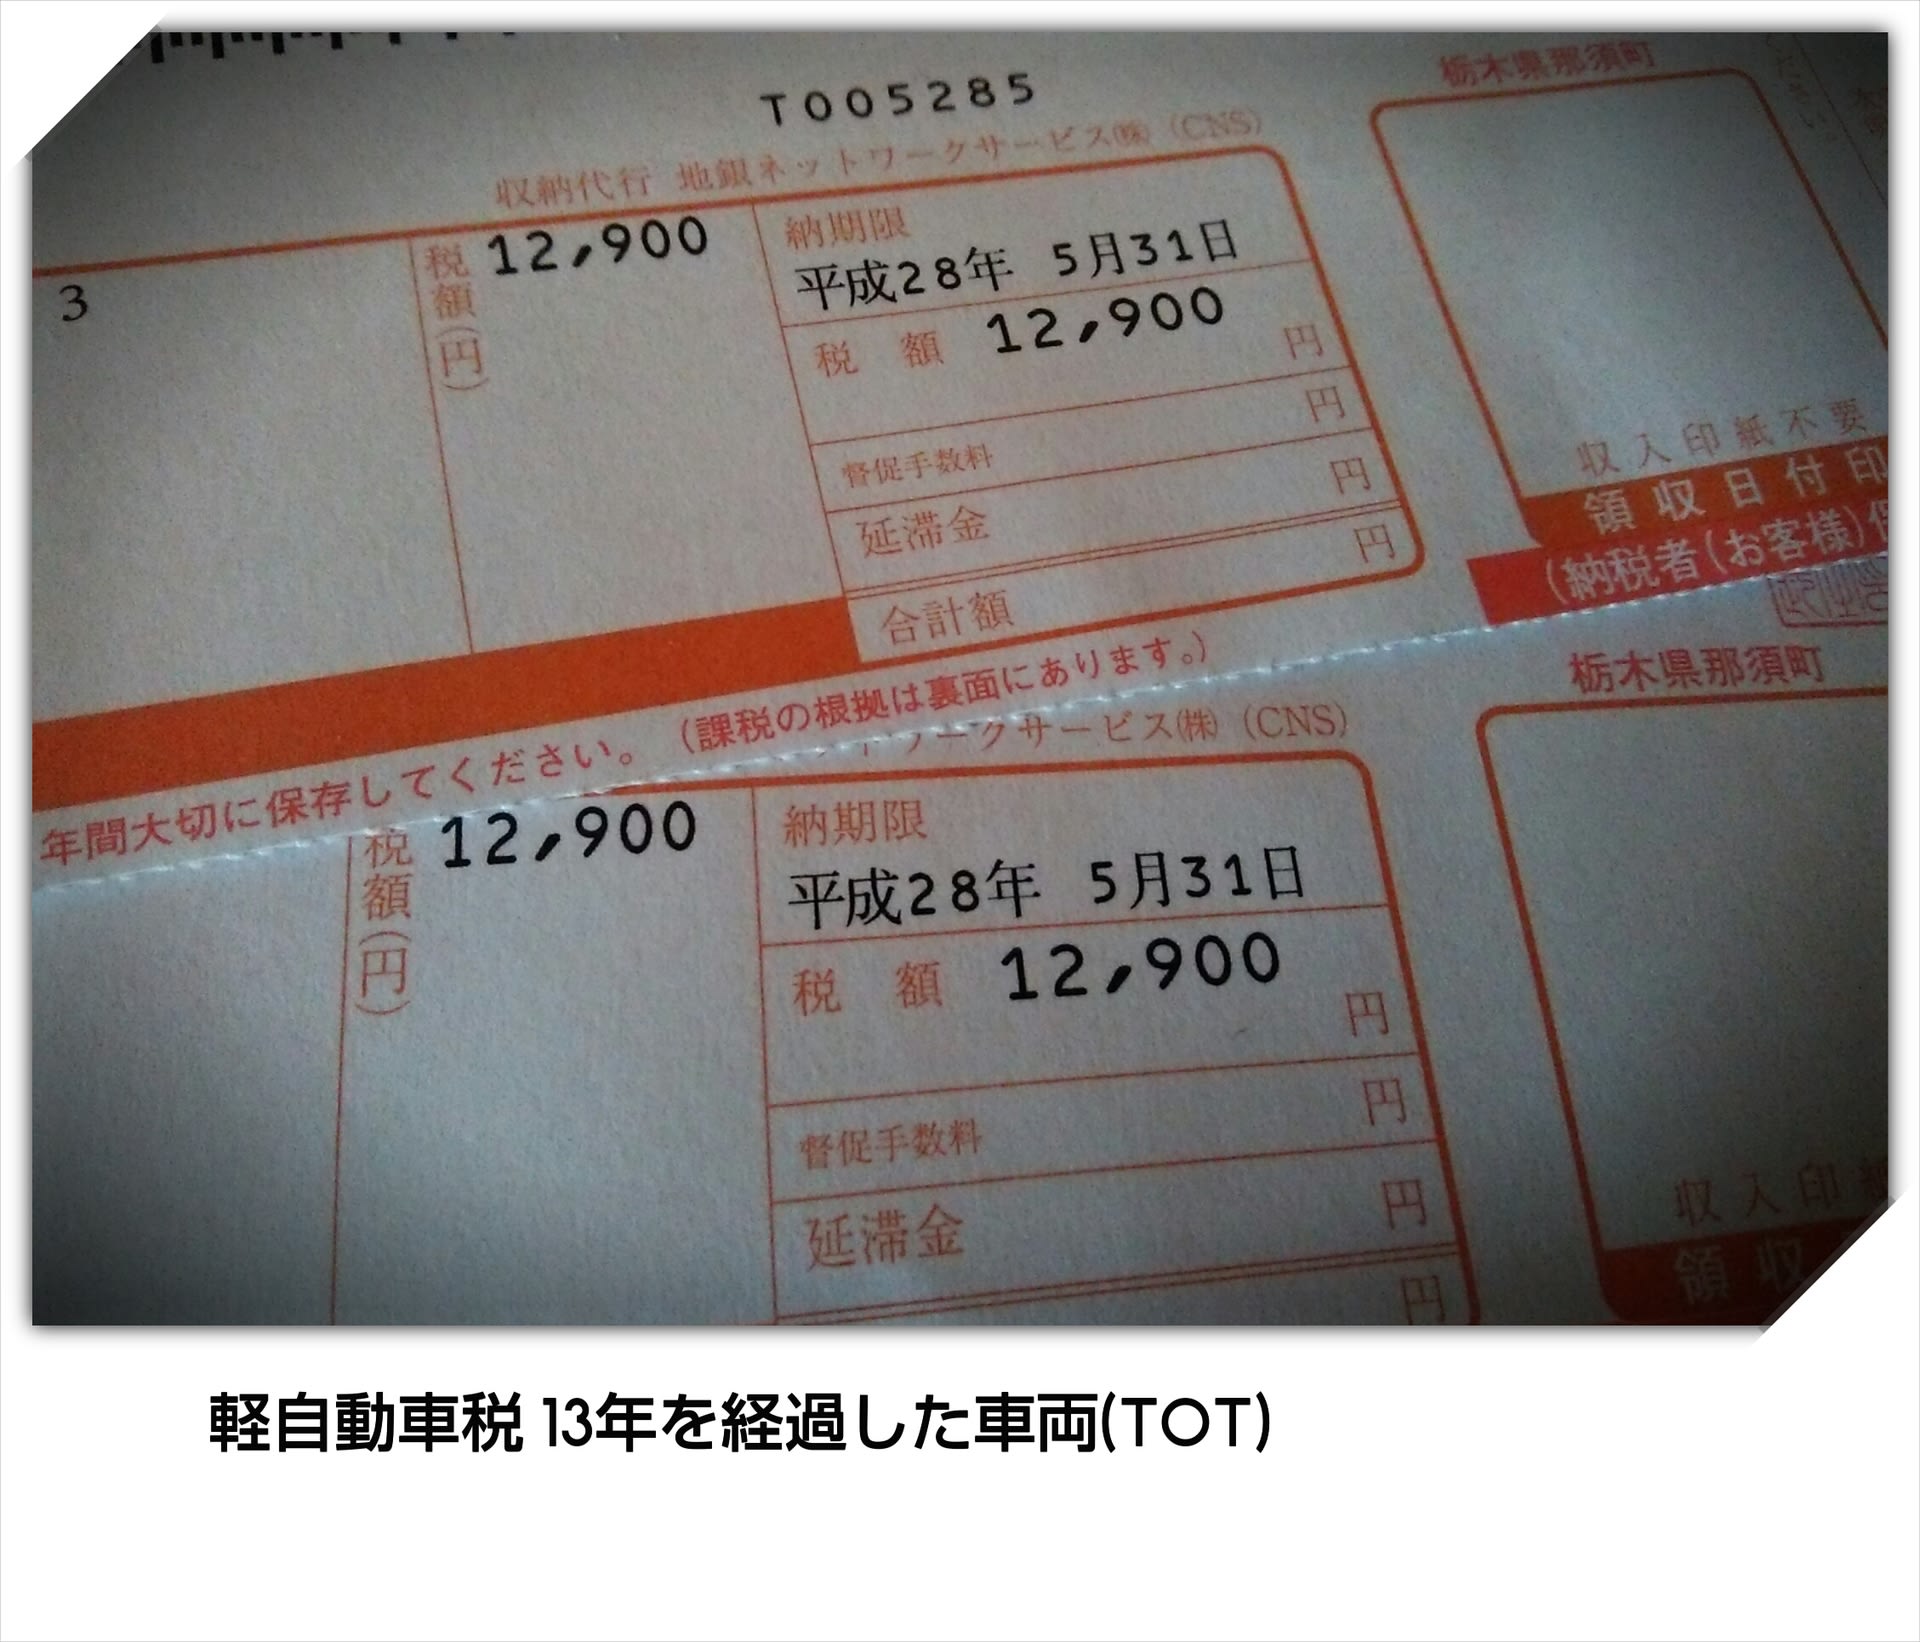 軽自動車税 13年経過した車両 円 焼きたてワッフルとコーヒーのお店 Nasu Aya Na Owner Message